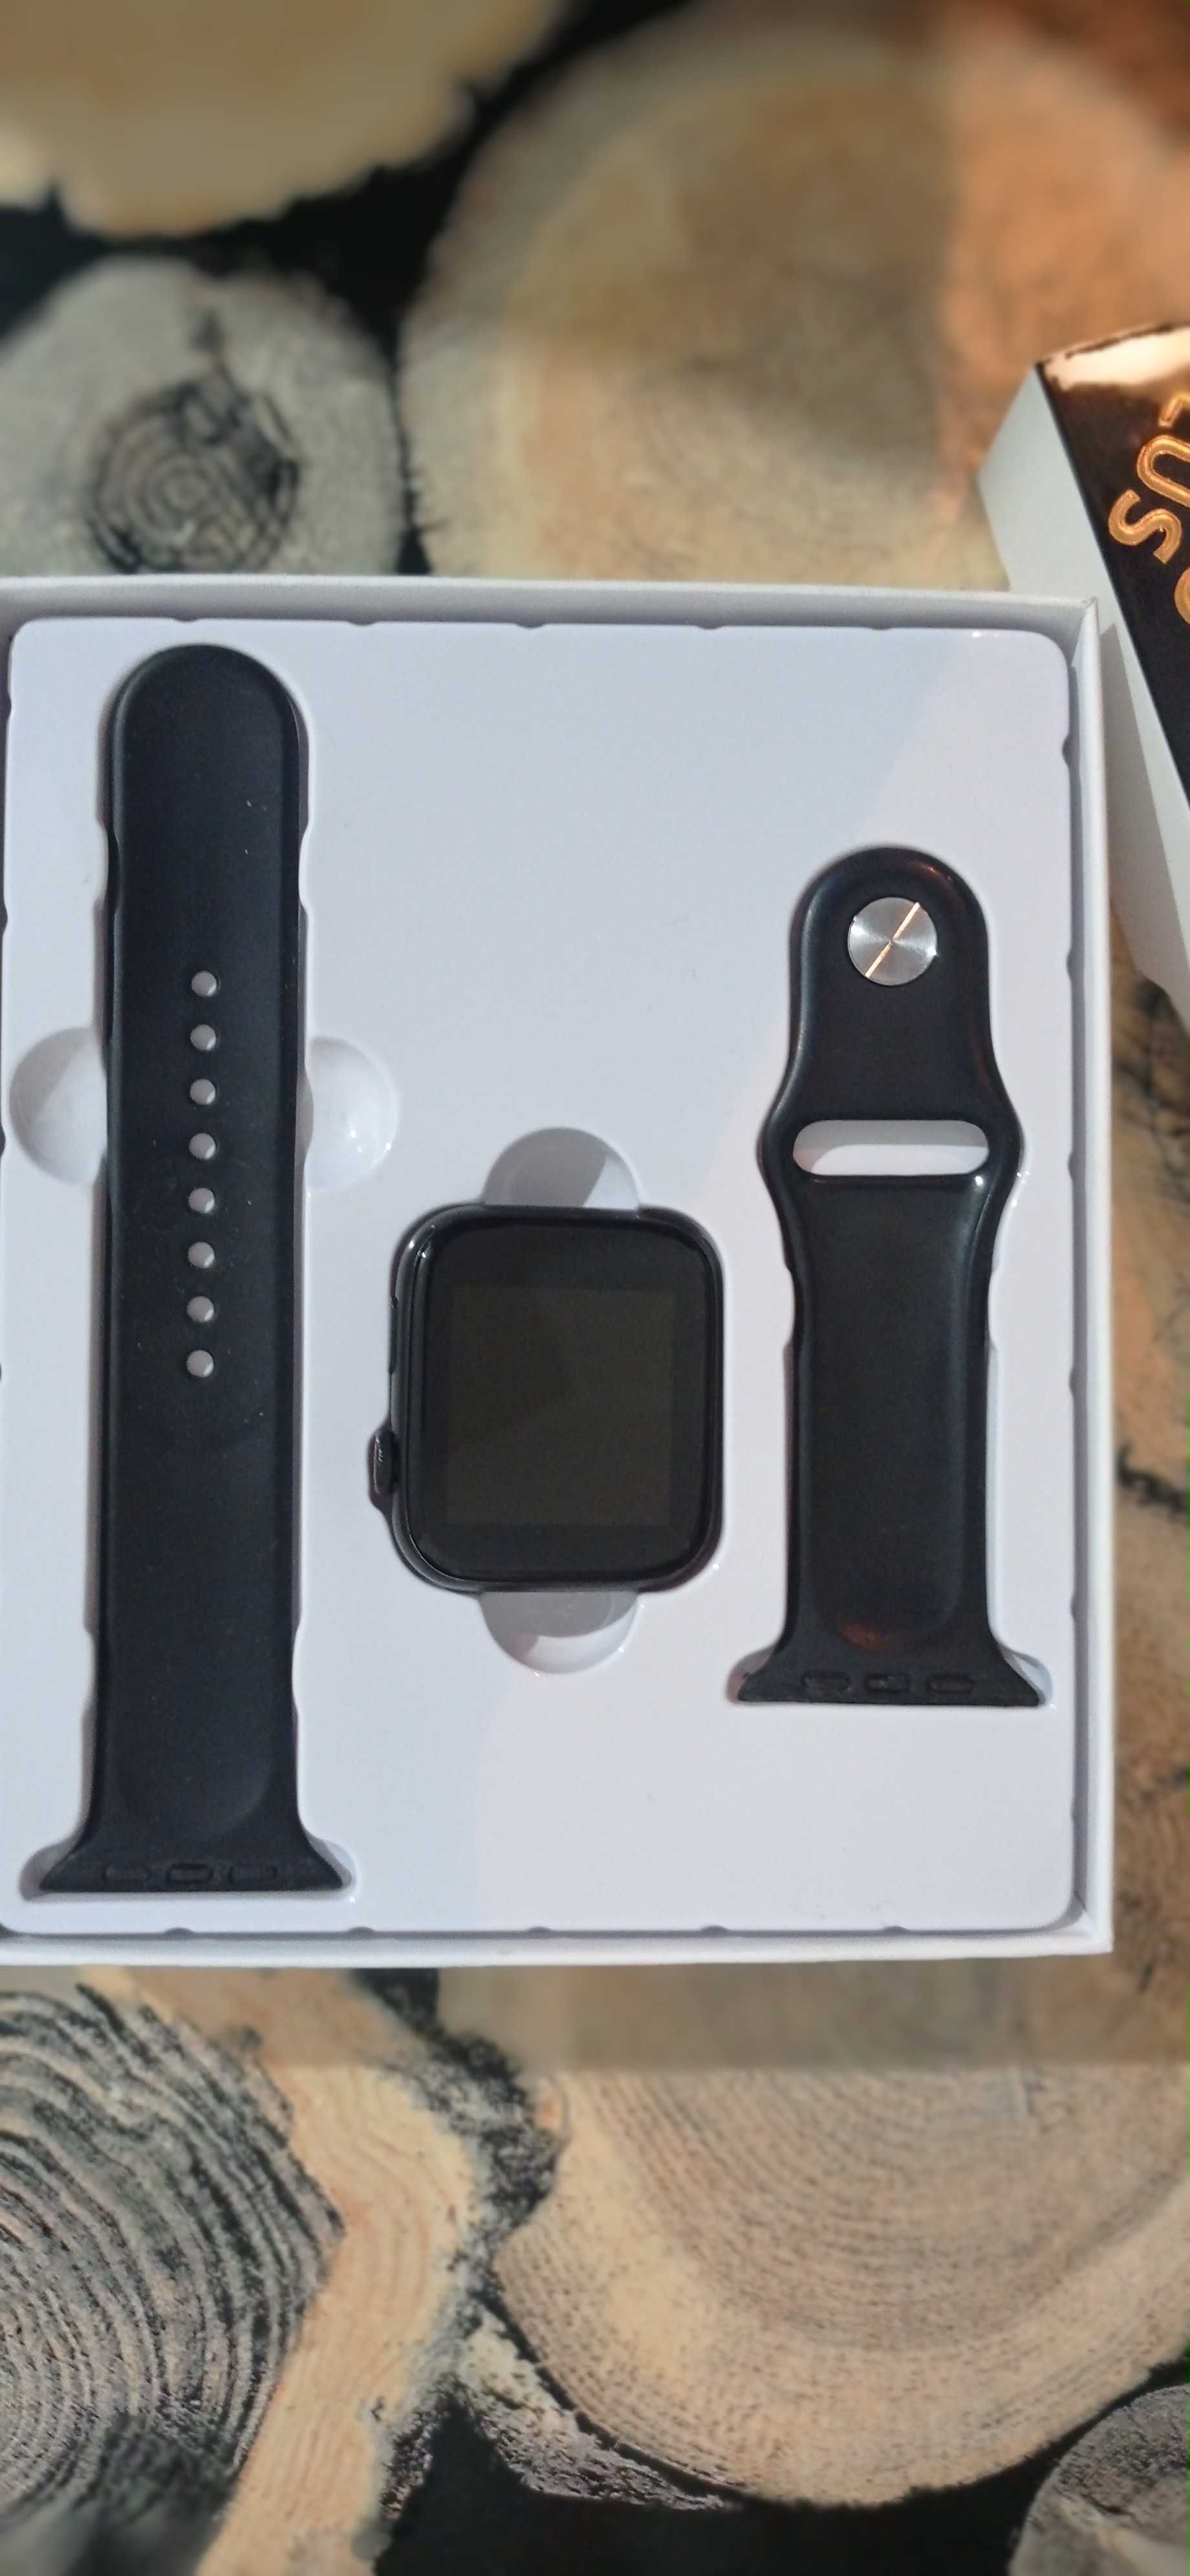 Vând sau schimb brățara smartwatch T500 PLUS